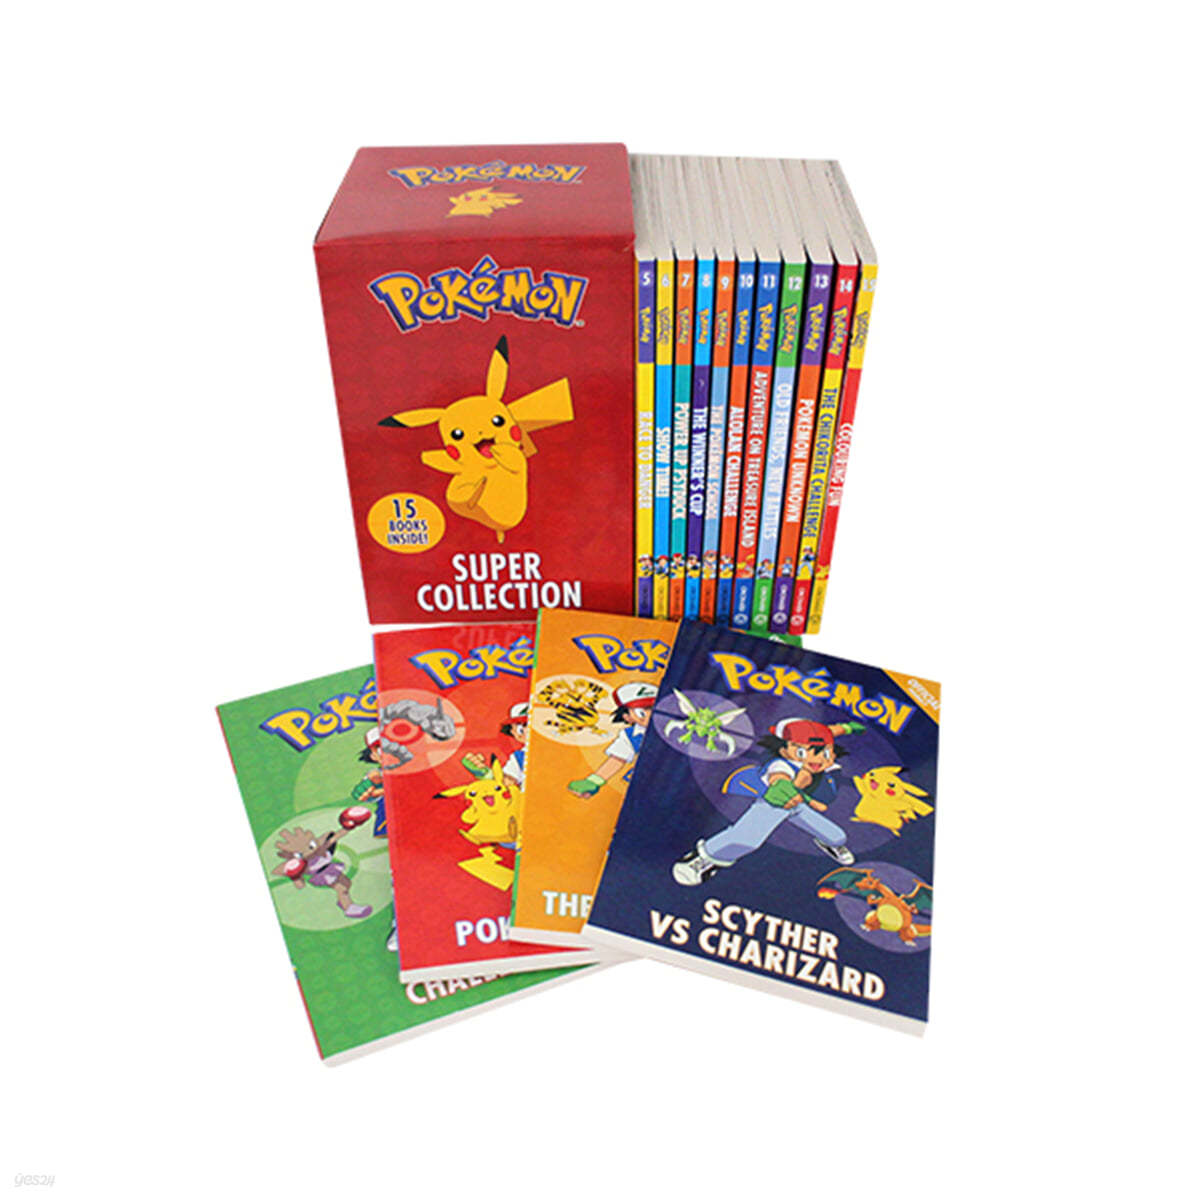 포켓몬 슈퍼 컬렉션 15종 세트 : Pokemon Super Collection 15 Books 